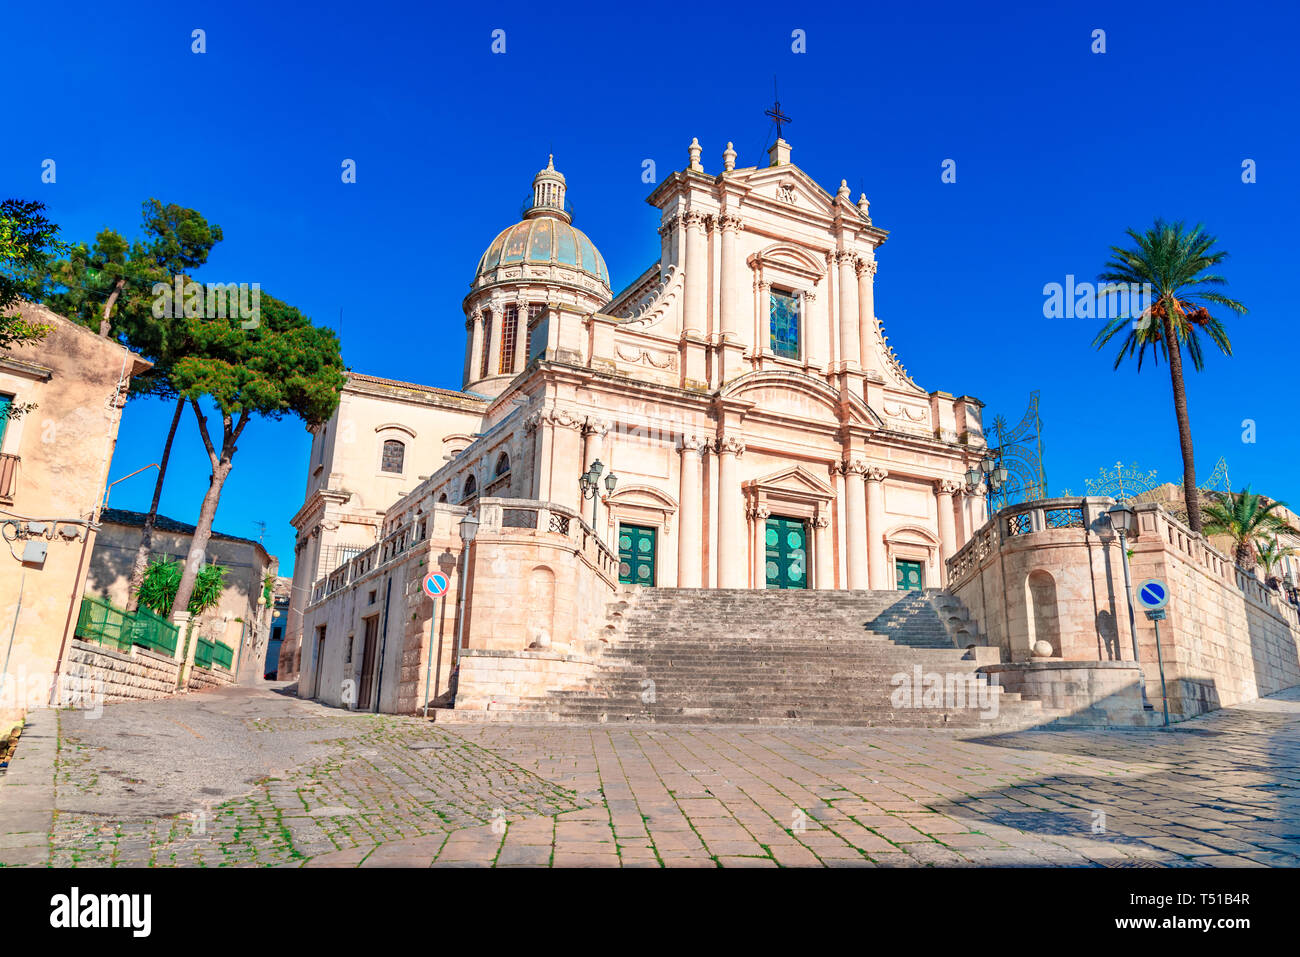 L'île de Sicile, Ragusa, Italie : l'église de style néo-classique de l'Annunziata,16ème siècle sur l'île de la Sicile, Italie Banque D'Images